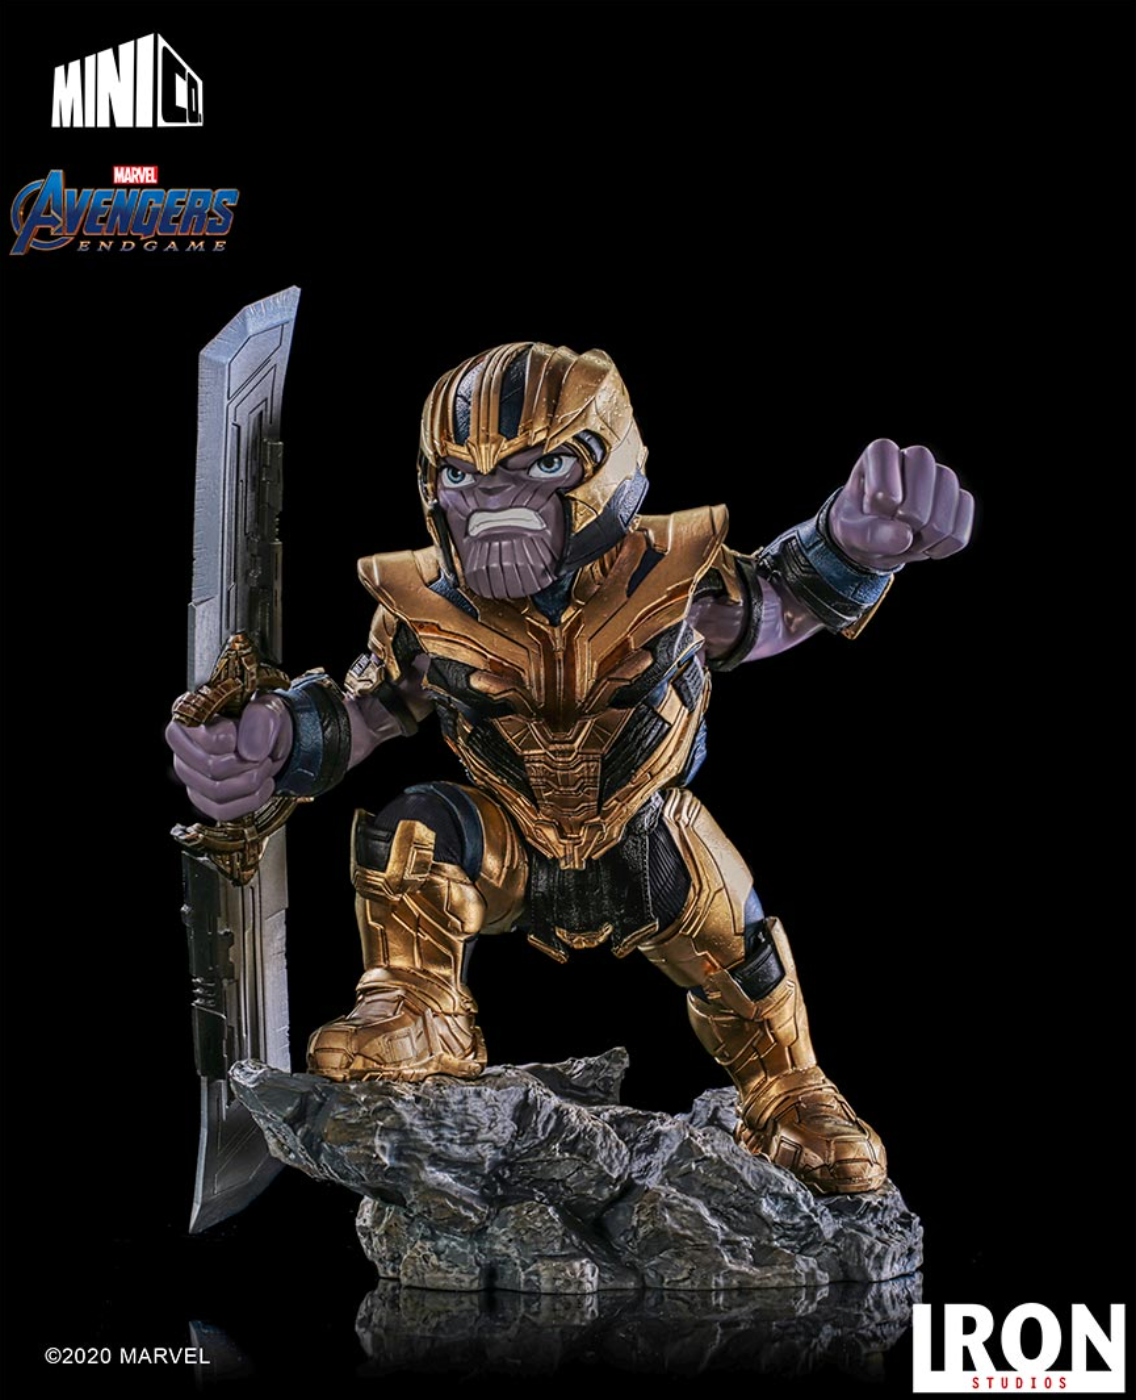 Iron Studios: Minico Avengers Endgame - Thanos